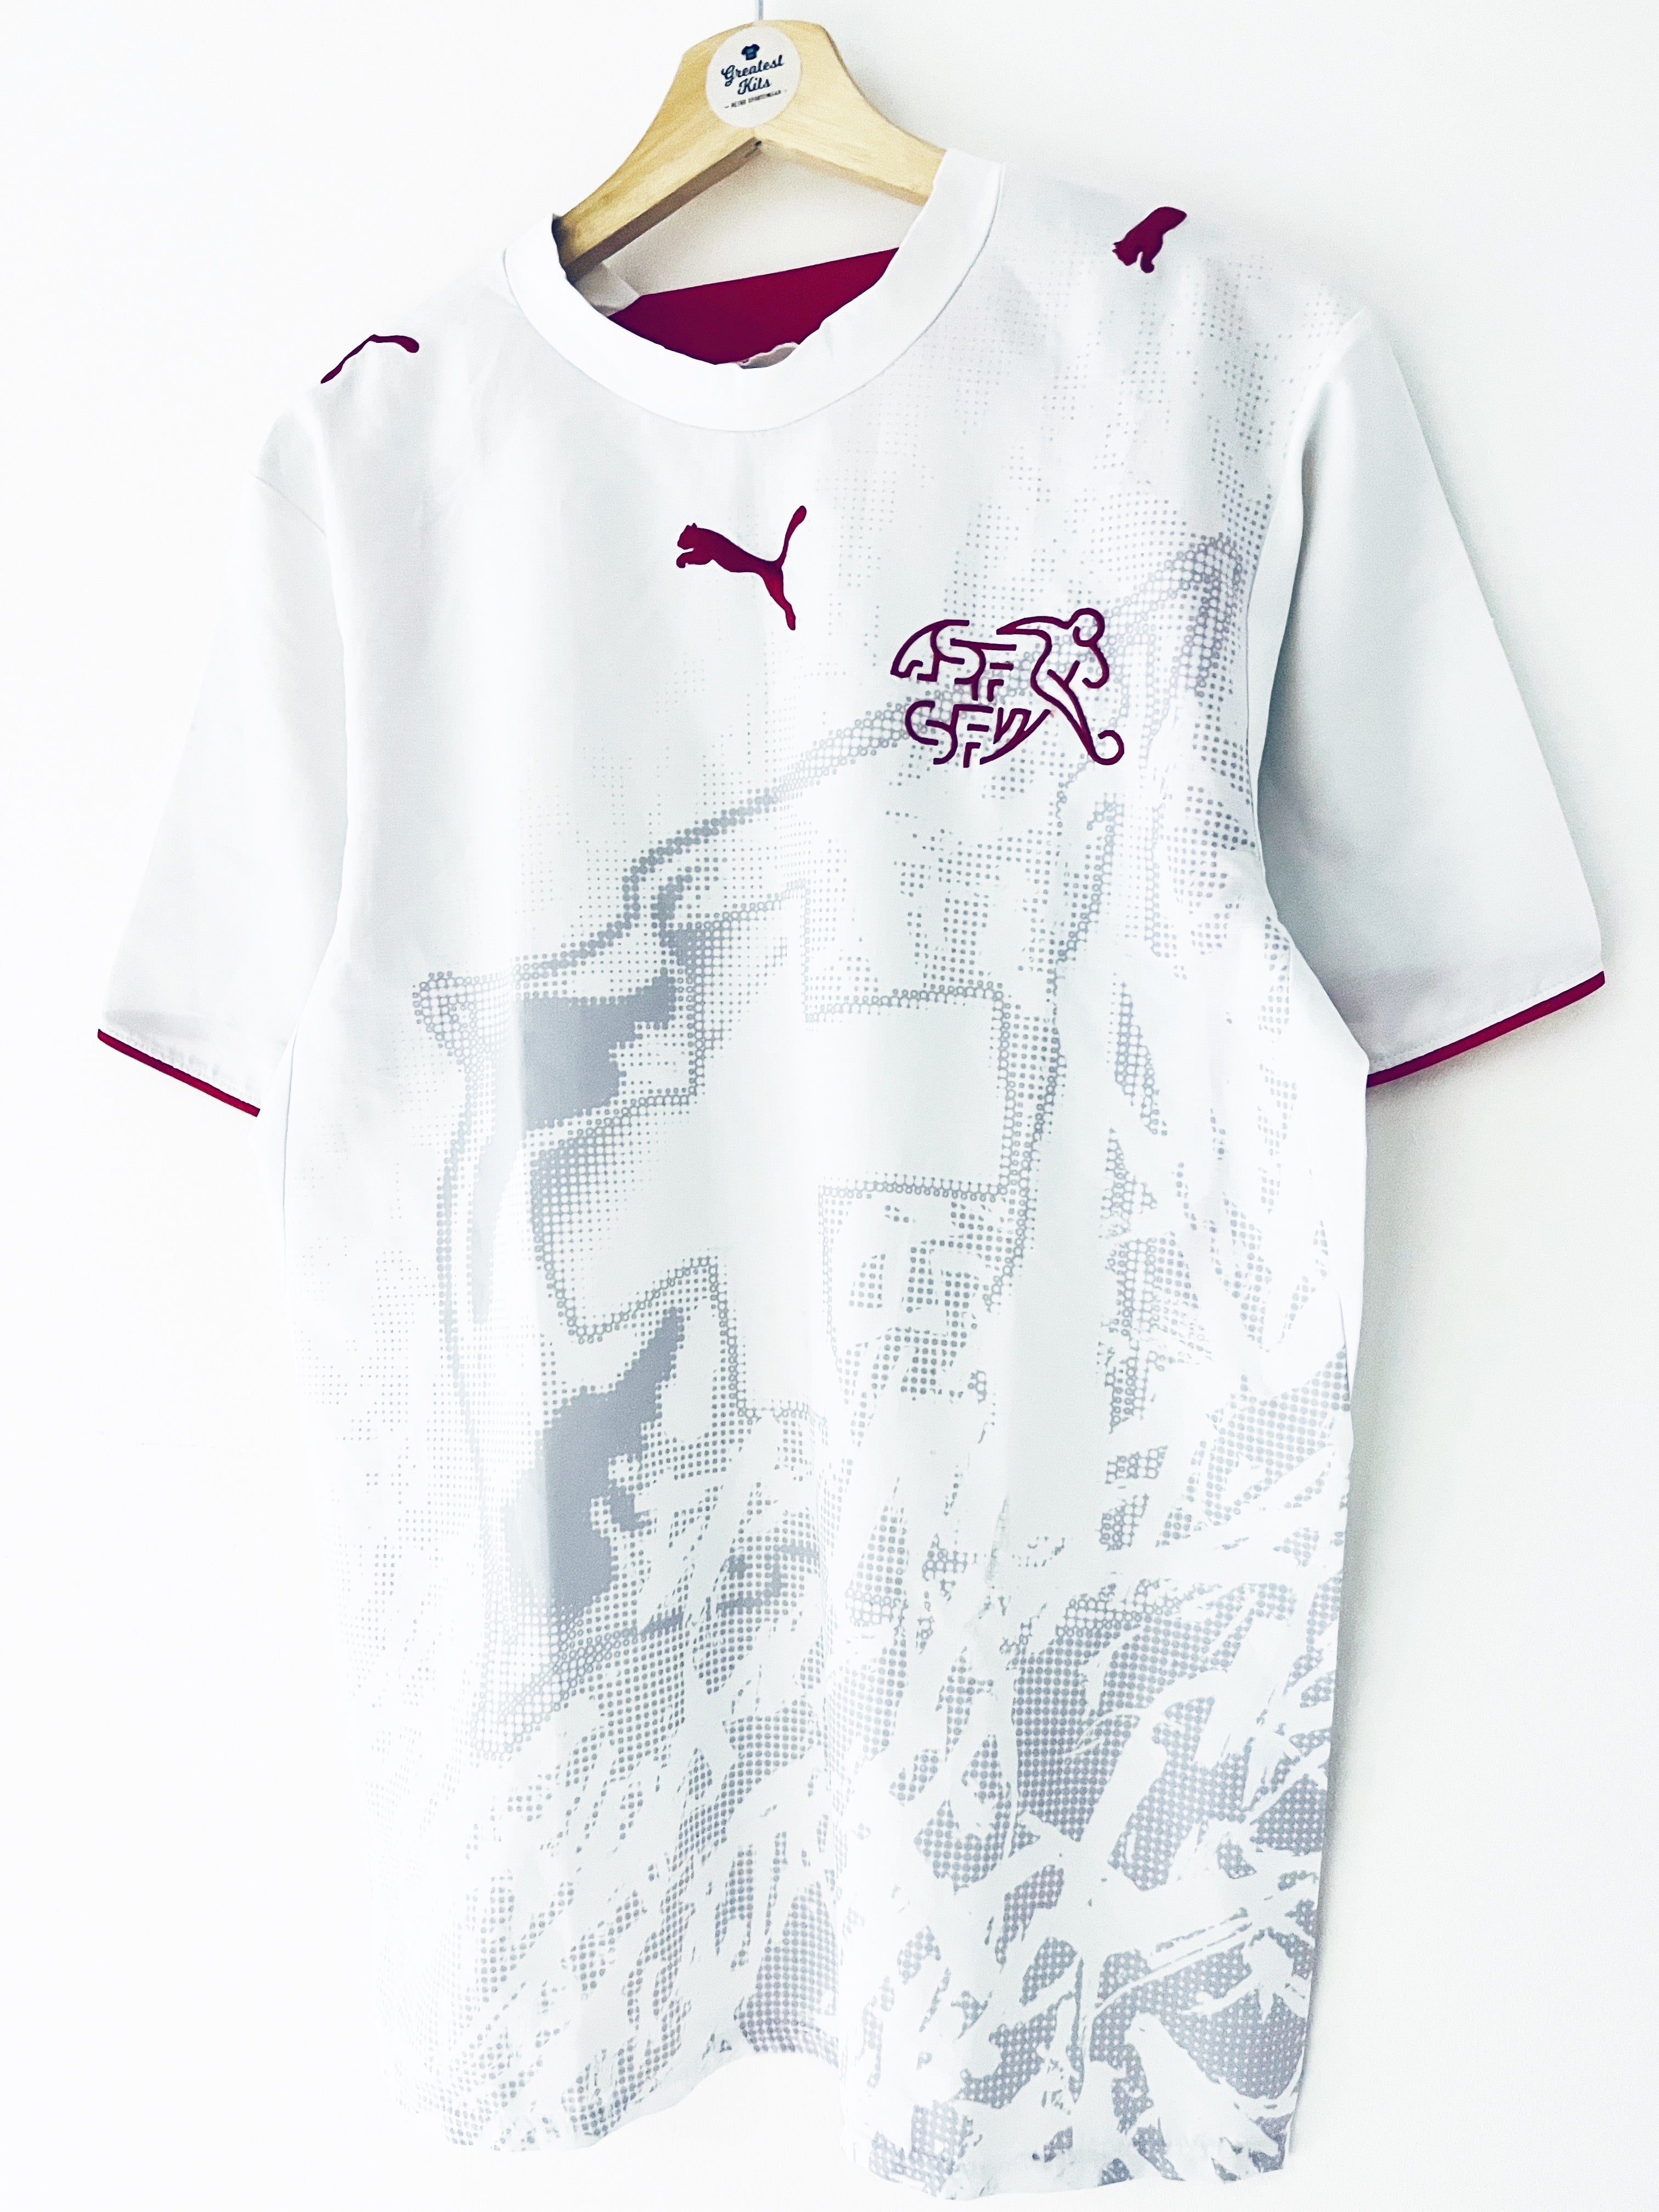 2006/08 Switzerland Away Shirt (S) 9/10